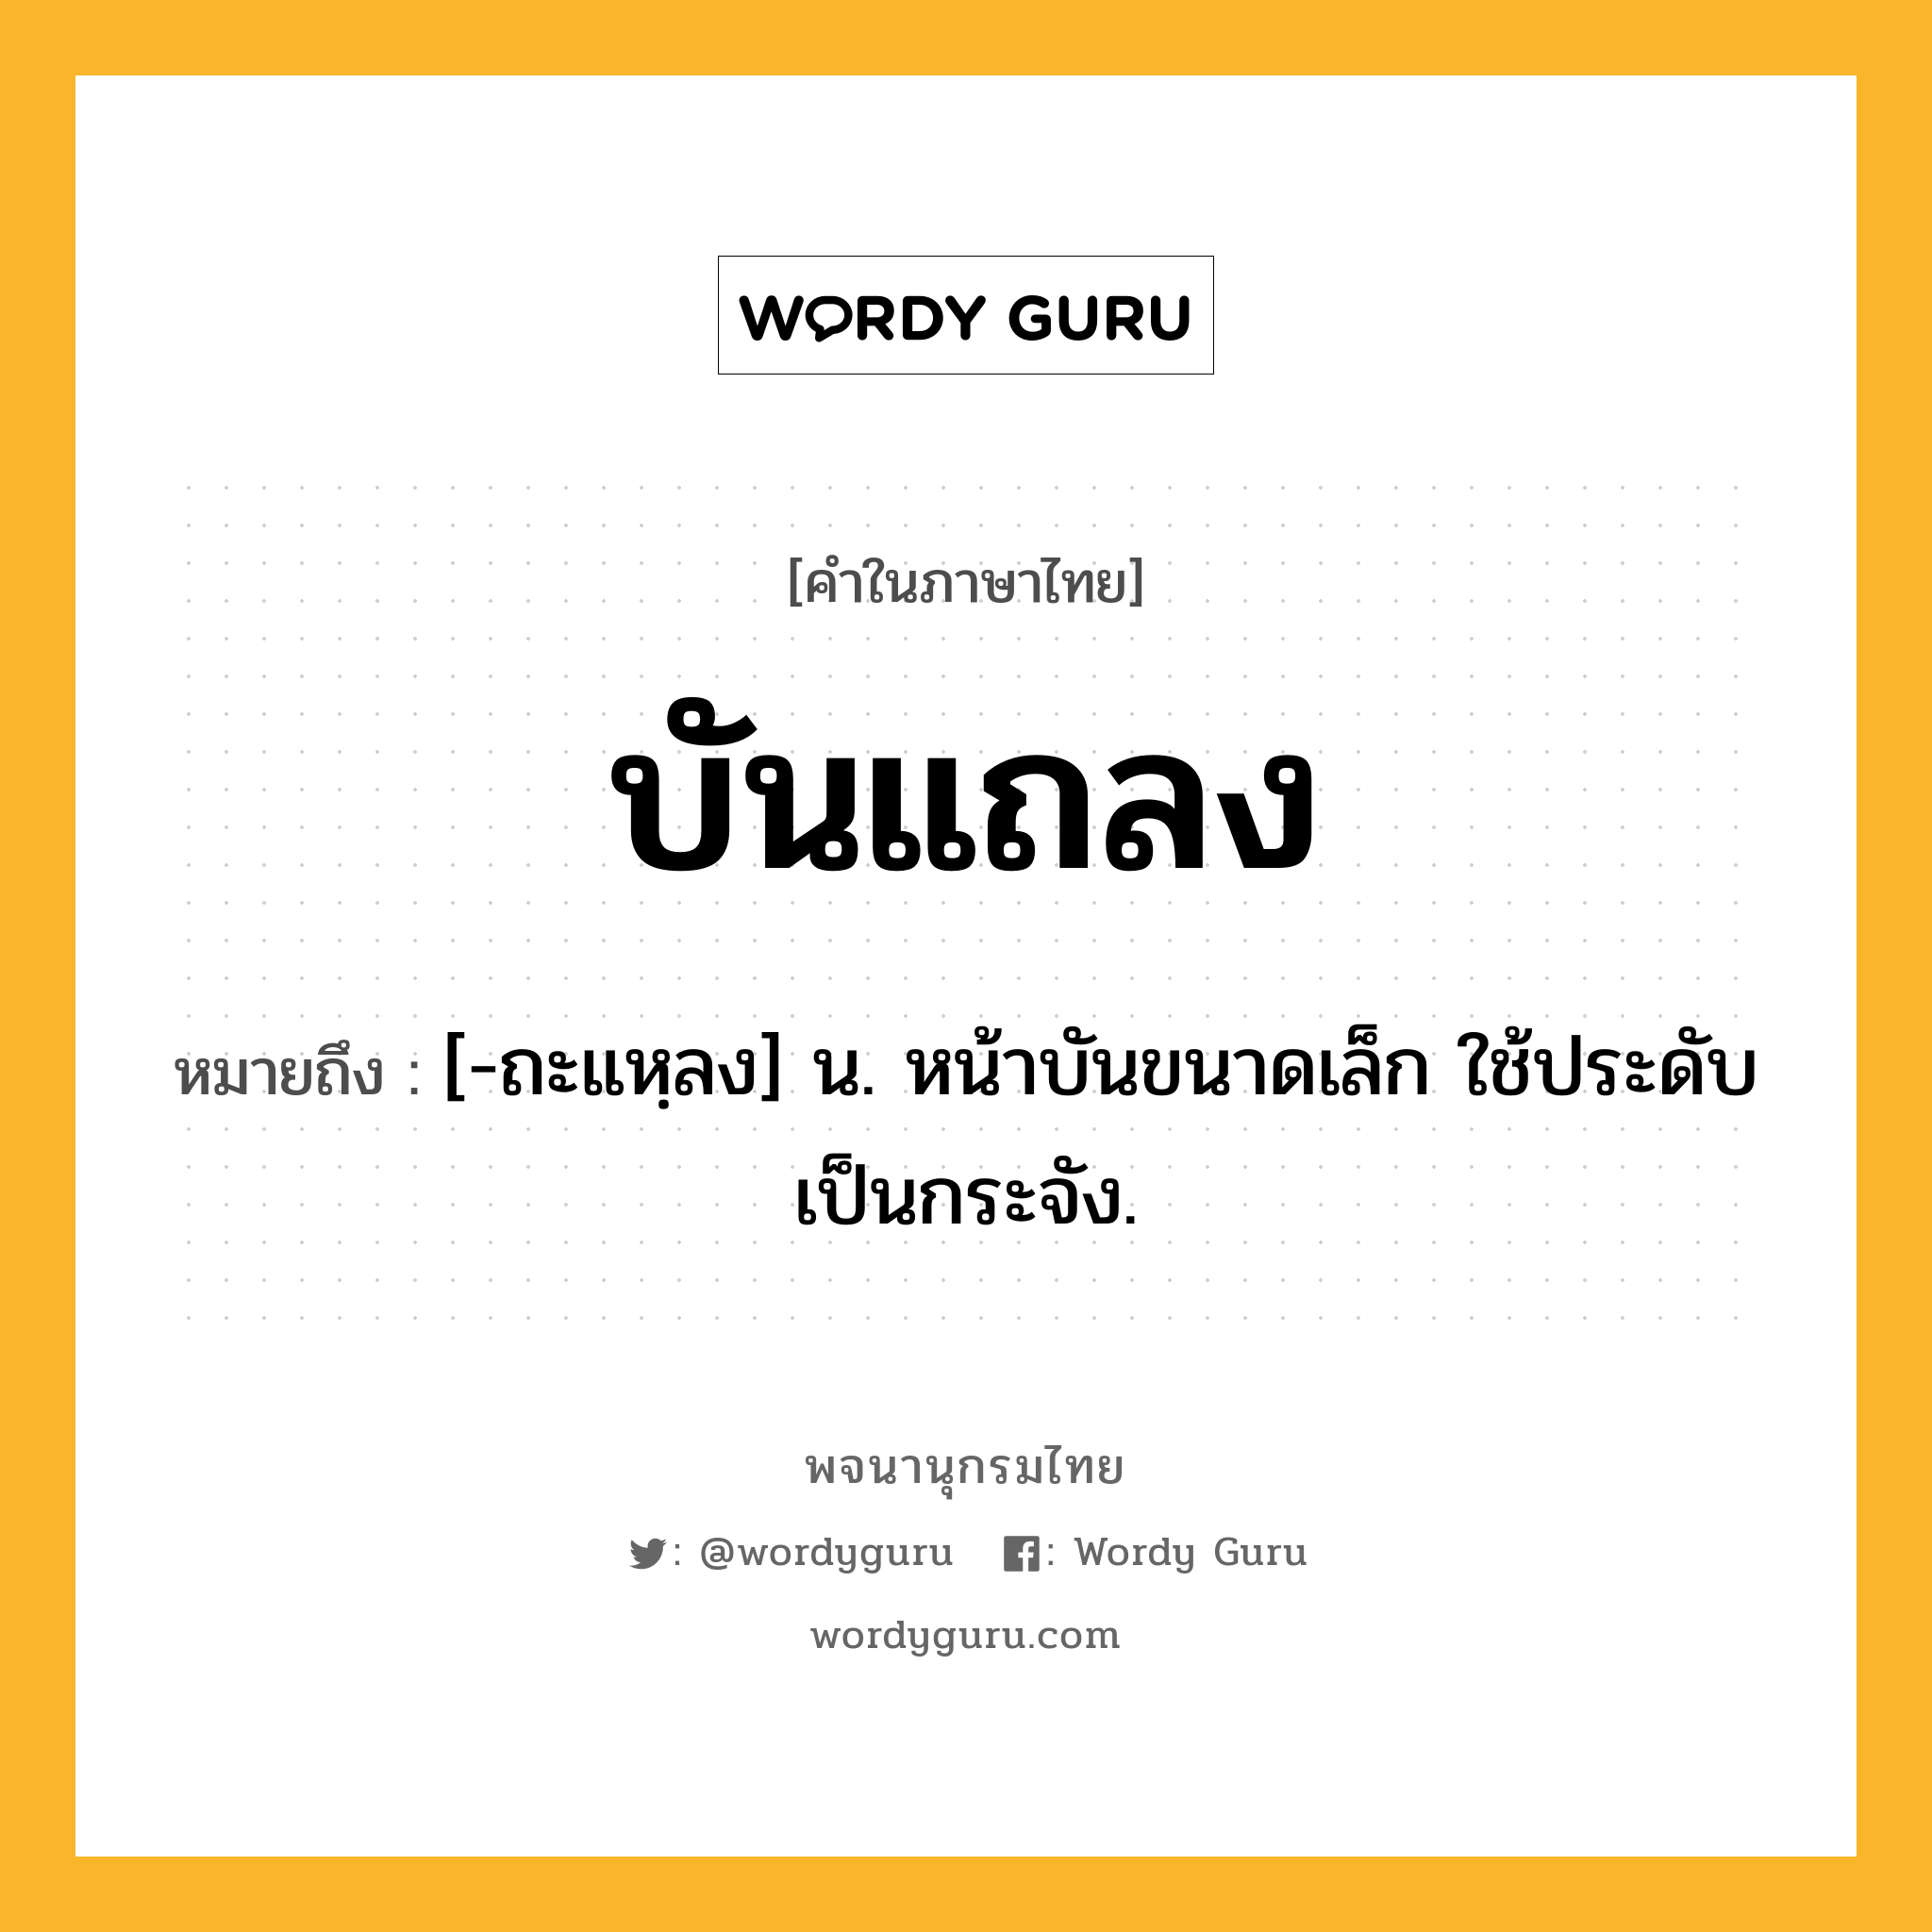 บันแถลง ความหมาย หมายถึงอะไร?, คำในภาษาไทย บันแถลง หมายถึง [-ถะแหฺลง] น. หน้าบันขนาดเล็ก ใช้ประดับเป็นกระจัง.